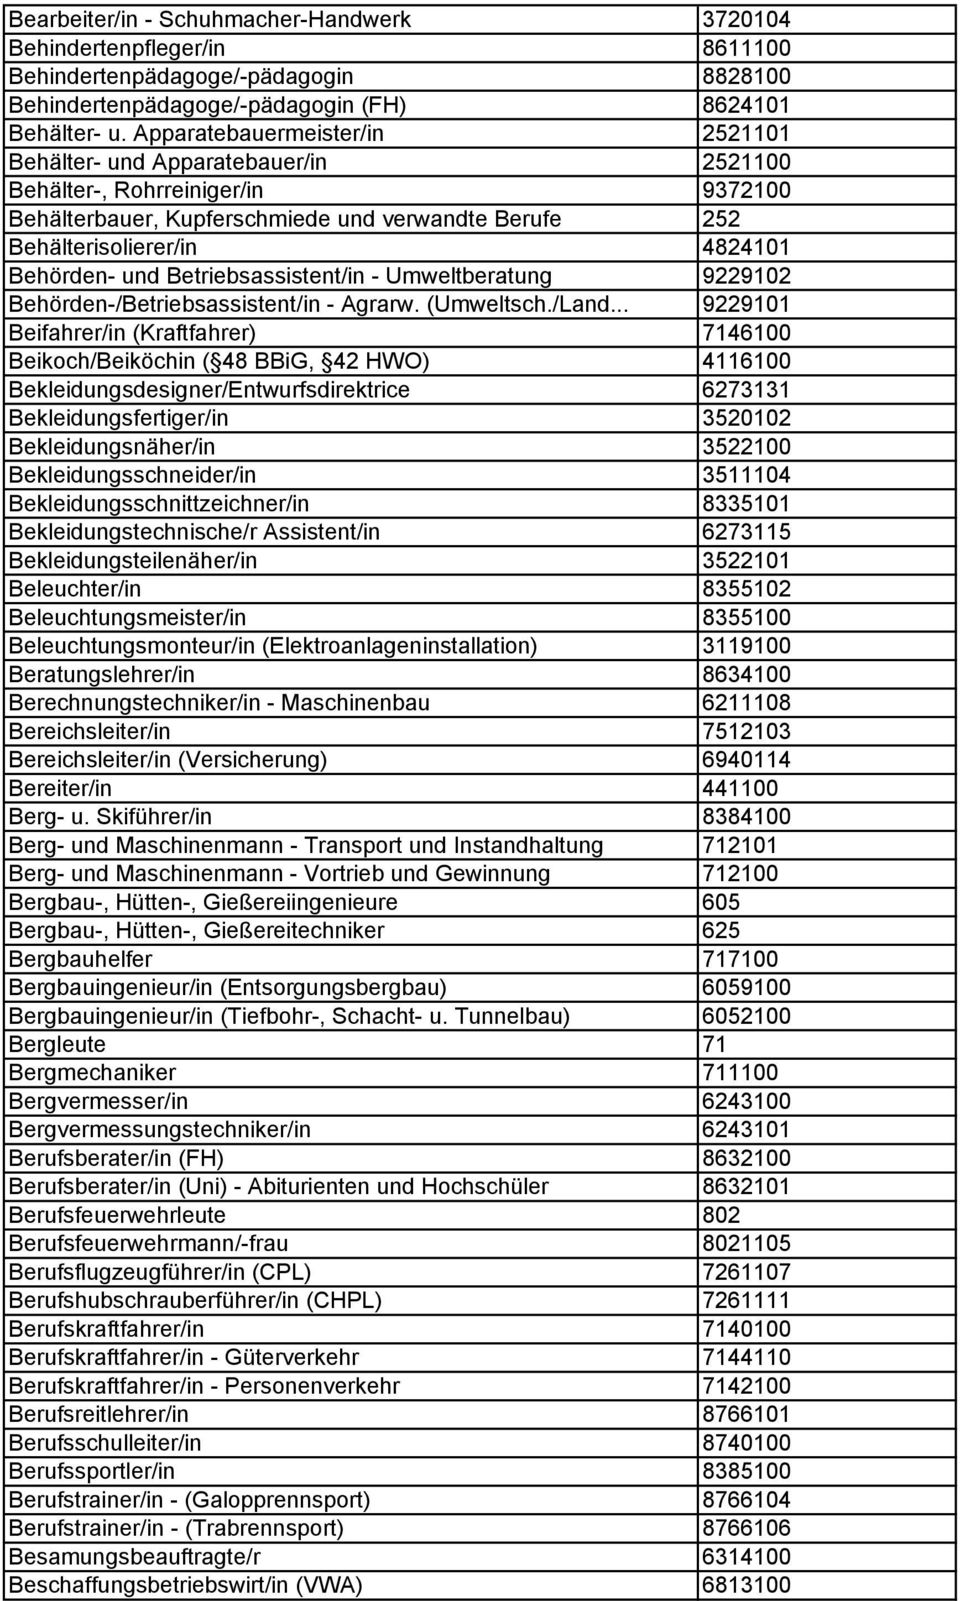 und Betriebsassistent/in - Umweltberatung 9229102 Behörden-/Betriebsassistent/in - Agrarw. (Umweltsch./Land.